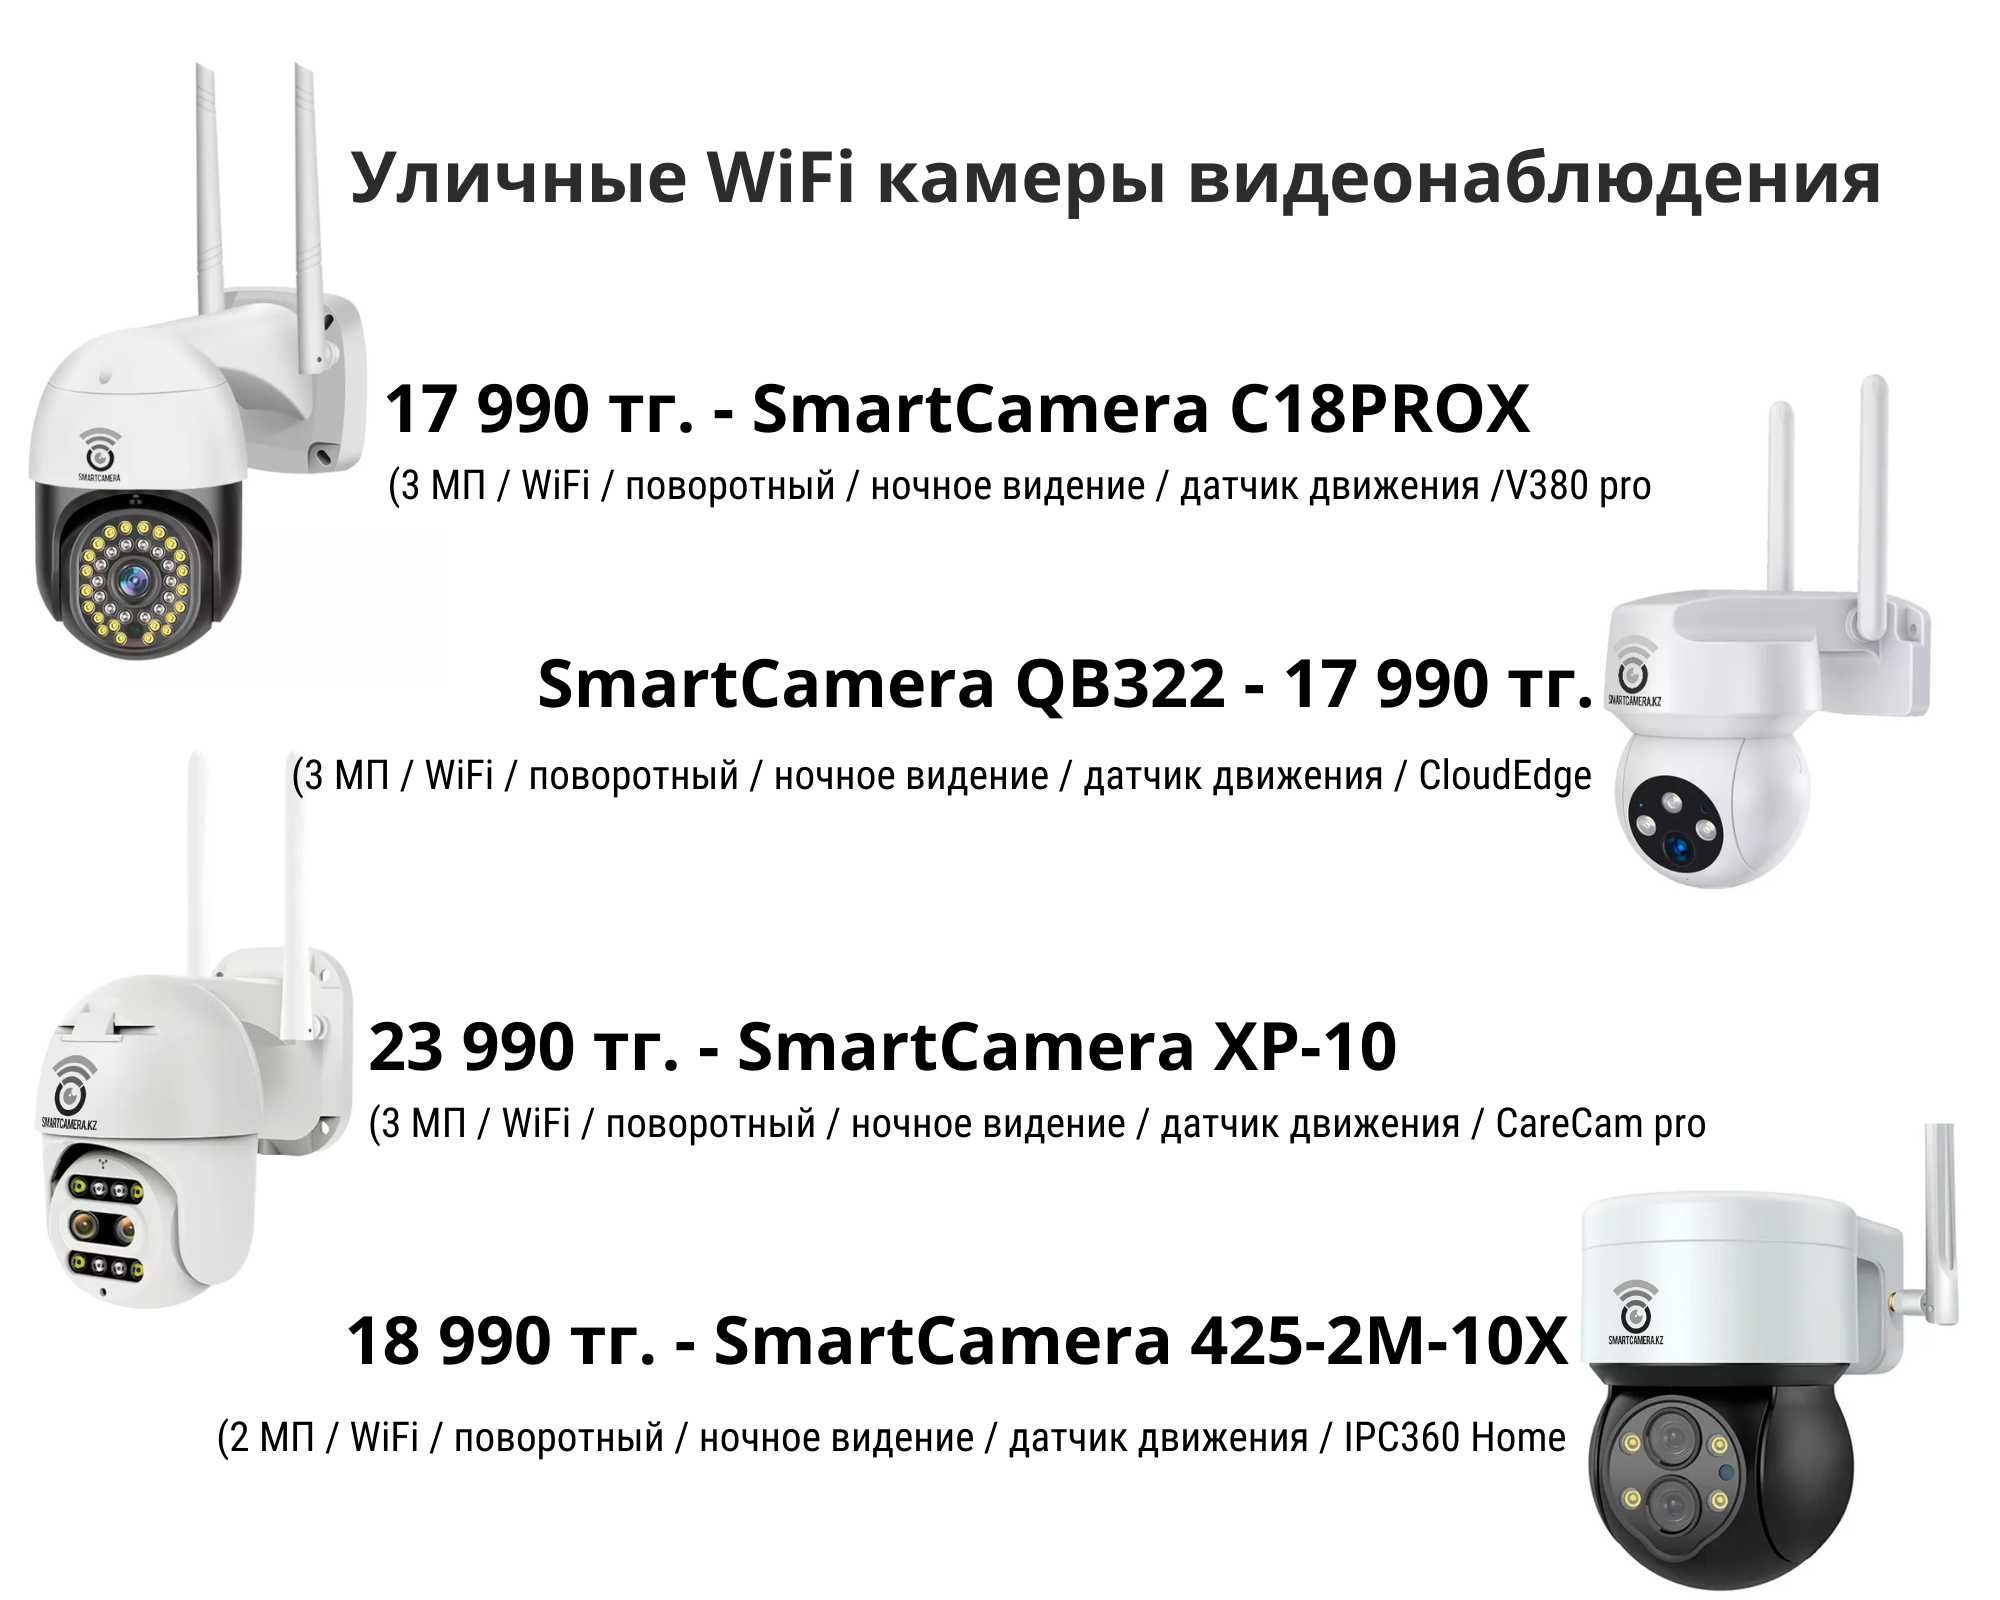 WiFi и 4G камеры видеонаблюдения для круглосуточного контроля